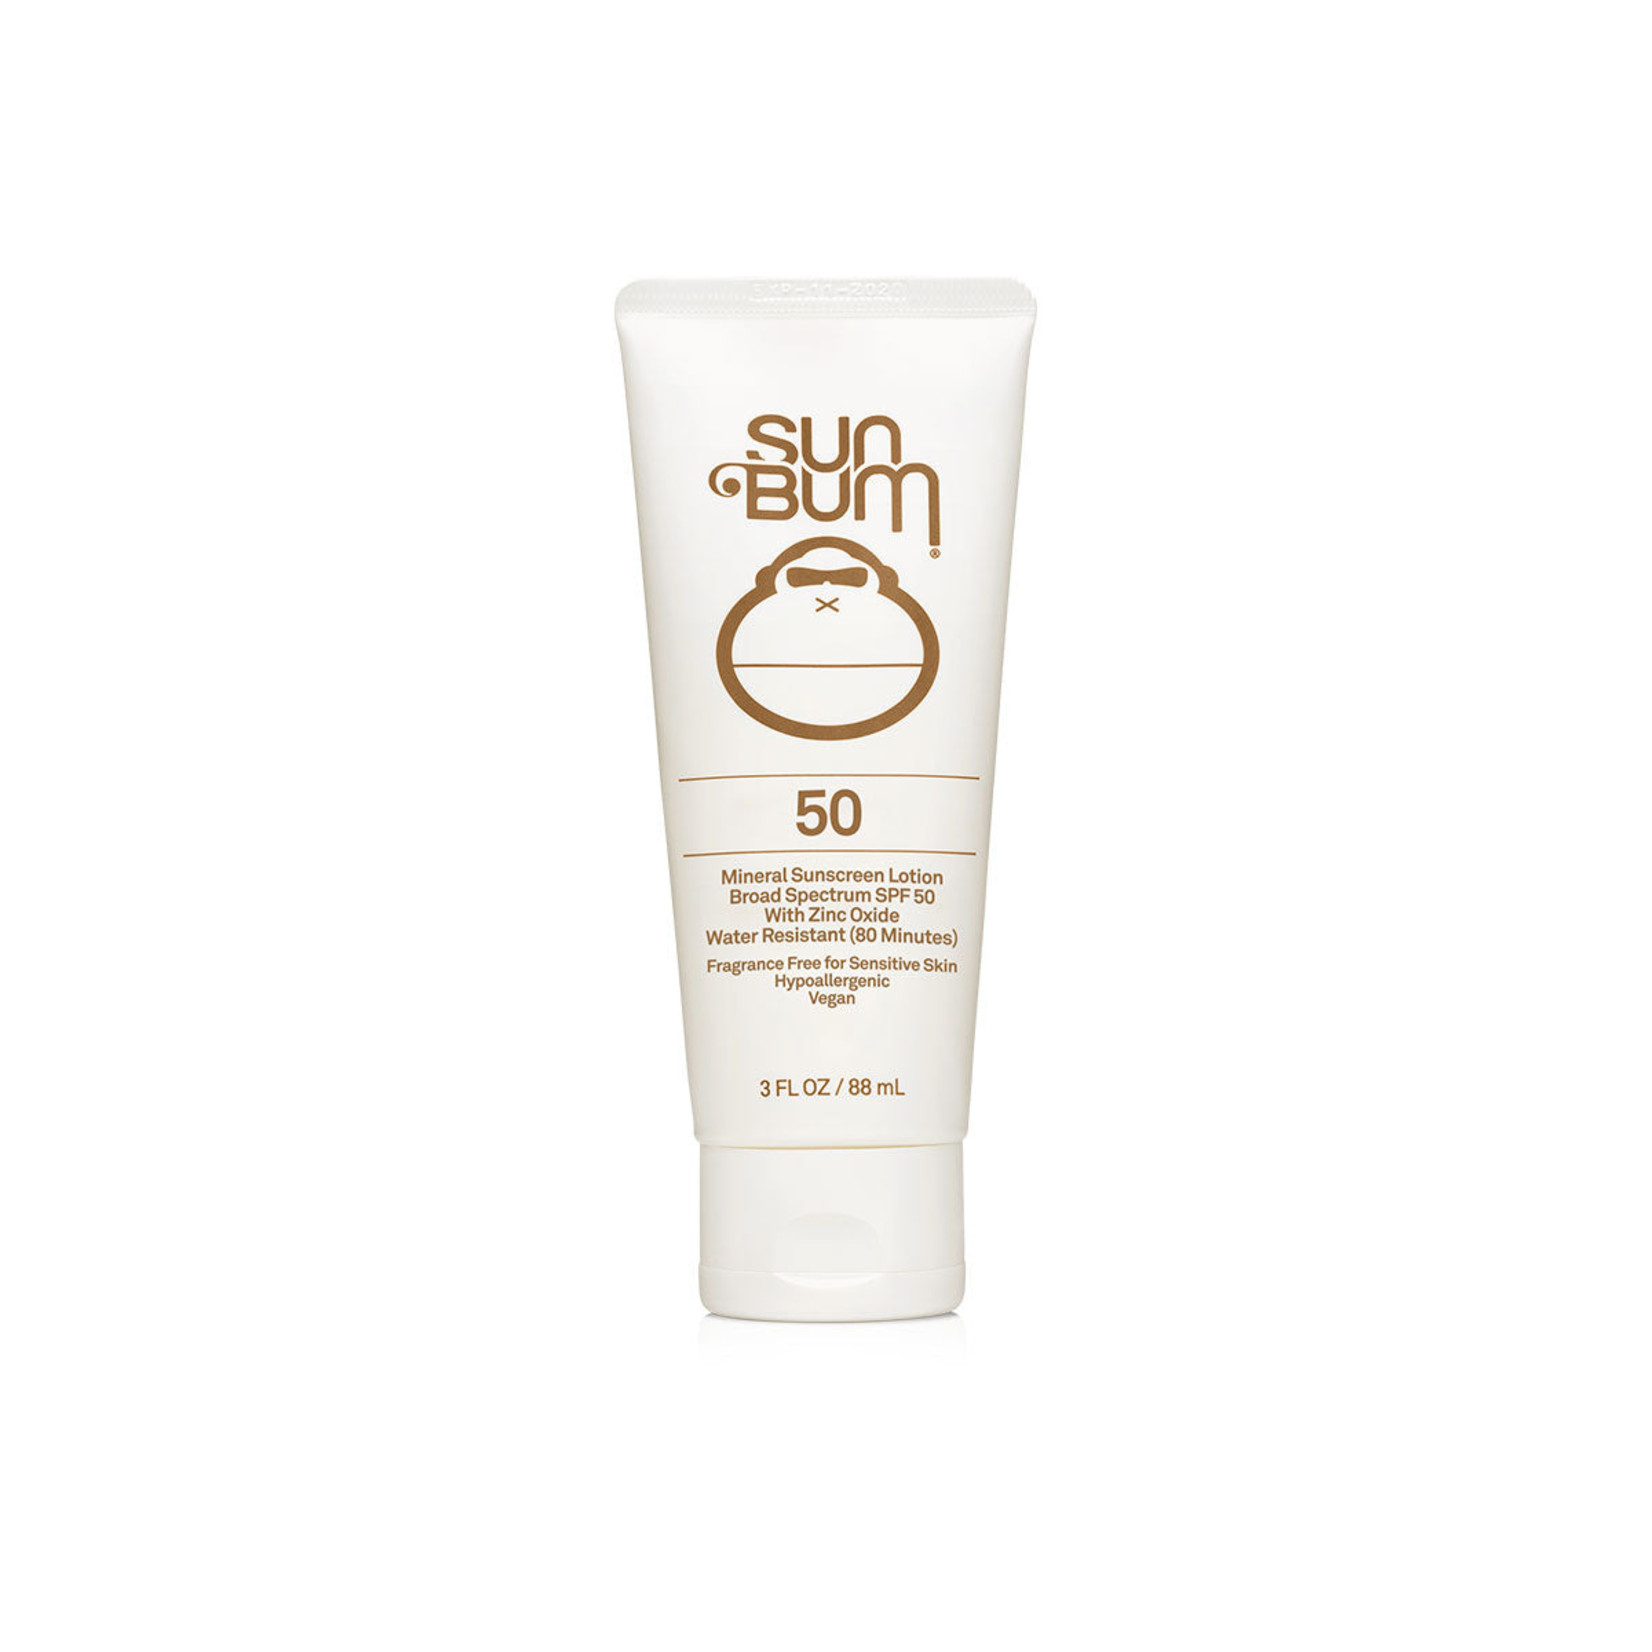 Sun Bum Sun Bum - Mineral Sunscreen Lotion Spf 50 - 3 oz TUBE